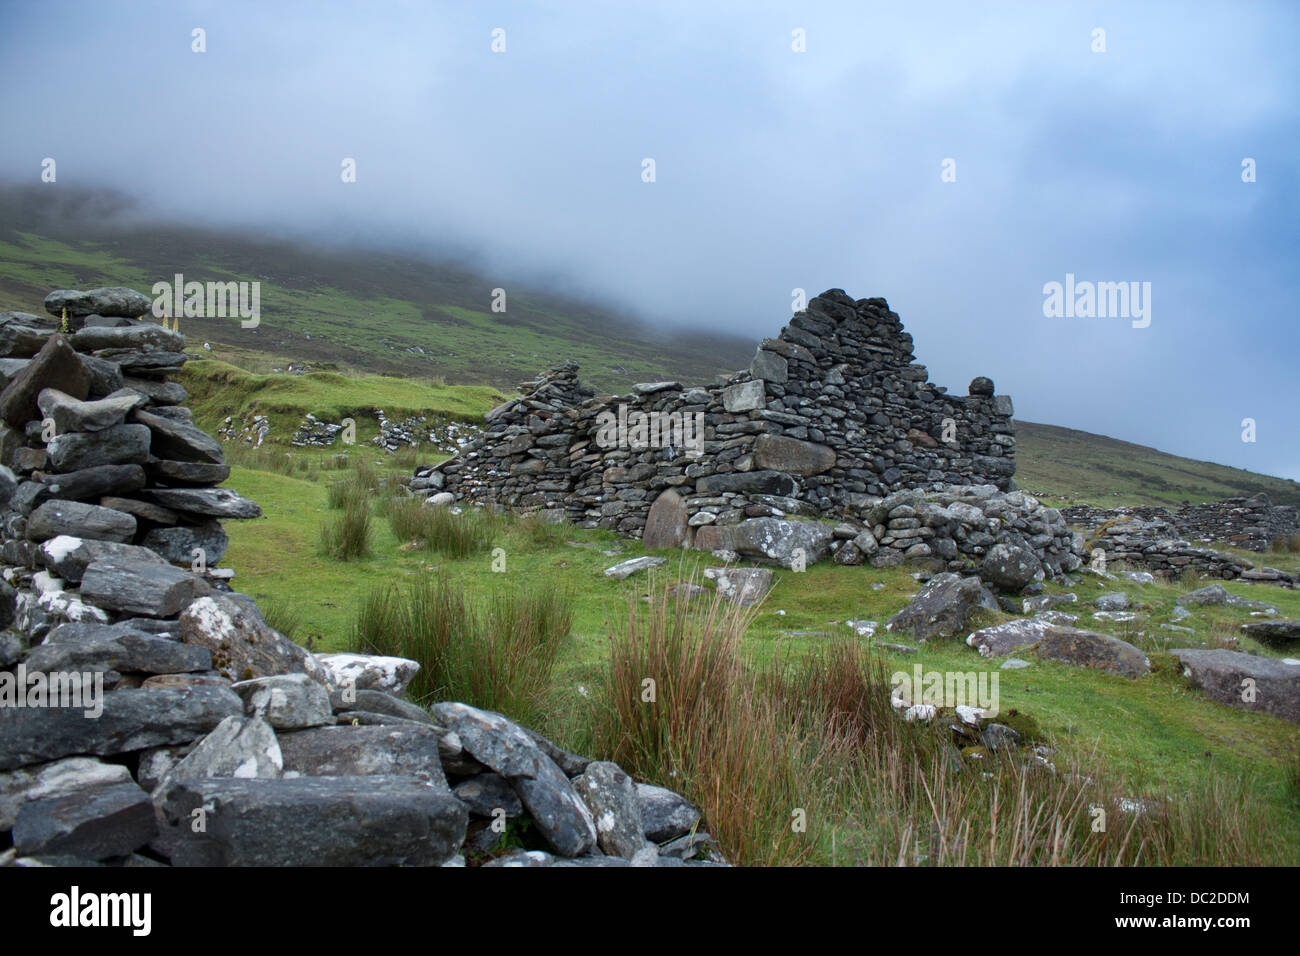 Aldea desierta Slievemore abandonadas después de hambruna de la papa en 1850 la isla Achill en el condado de Mayo Eire la República de Irlanda Foto de stock